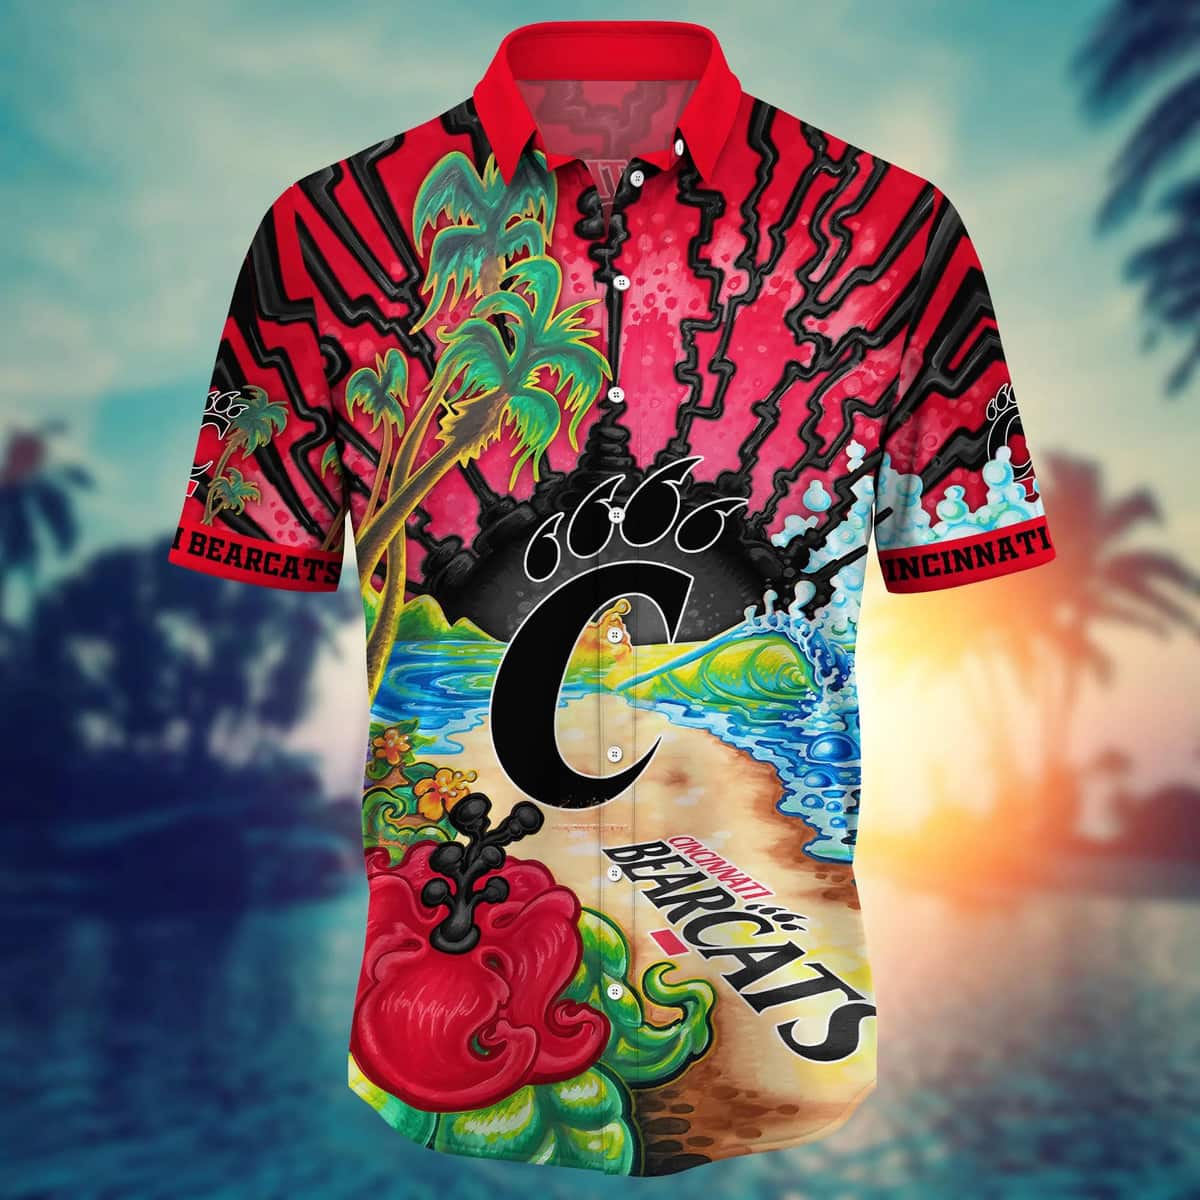 NCAA Cincinnati Bearcats Hawaiian Shirt Summer Holiday Best Family Gift